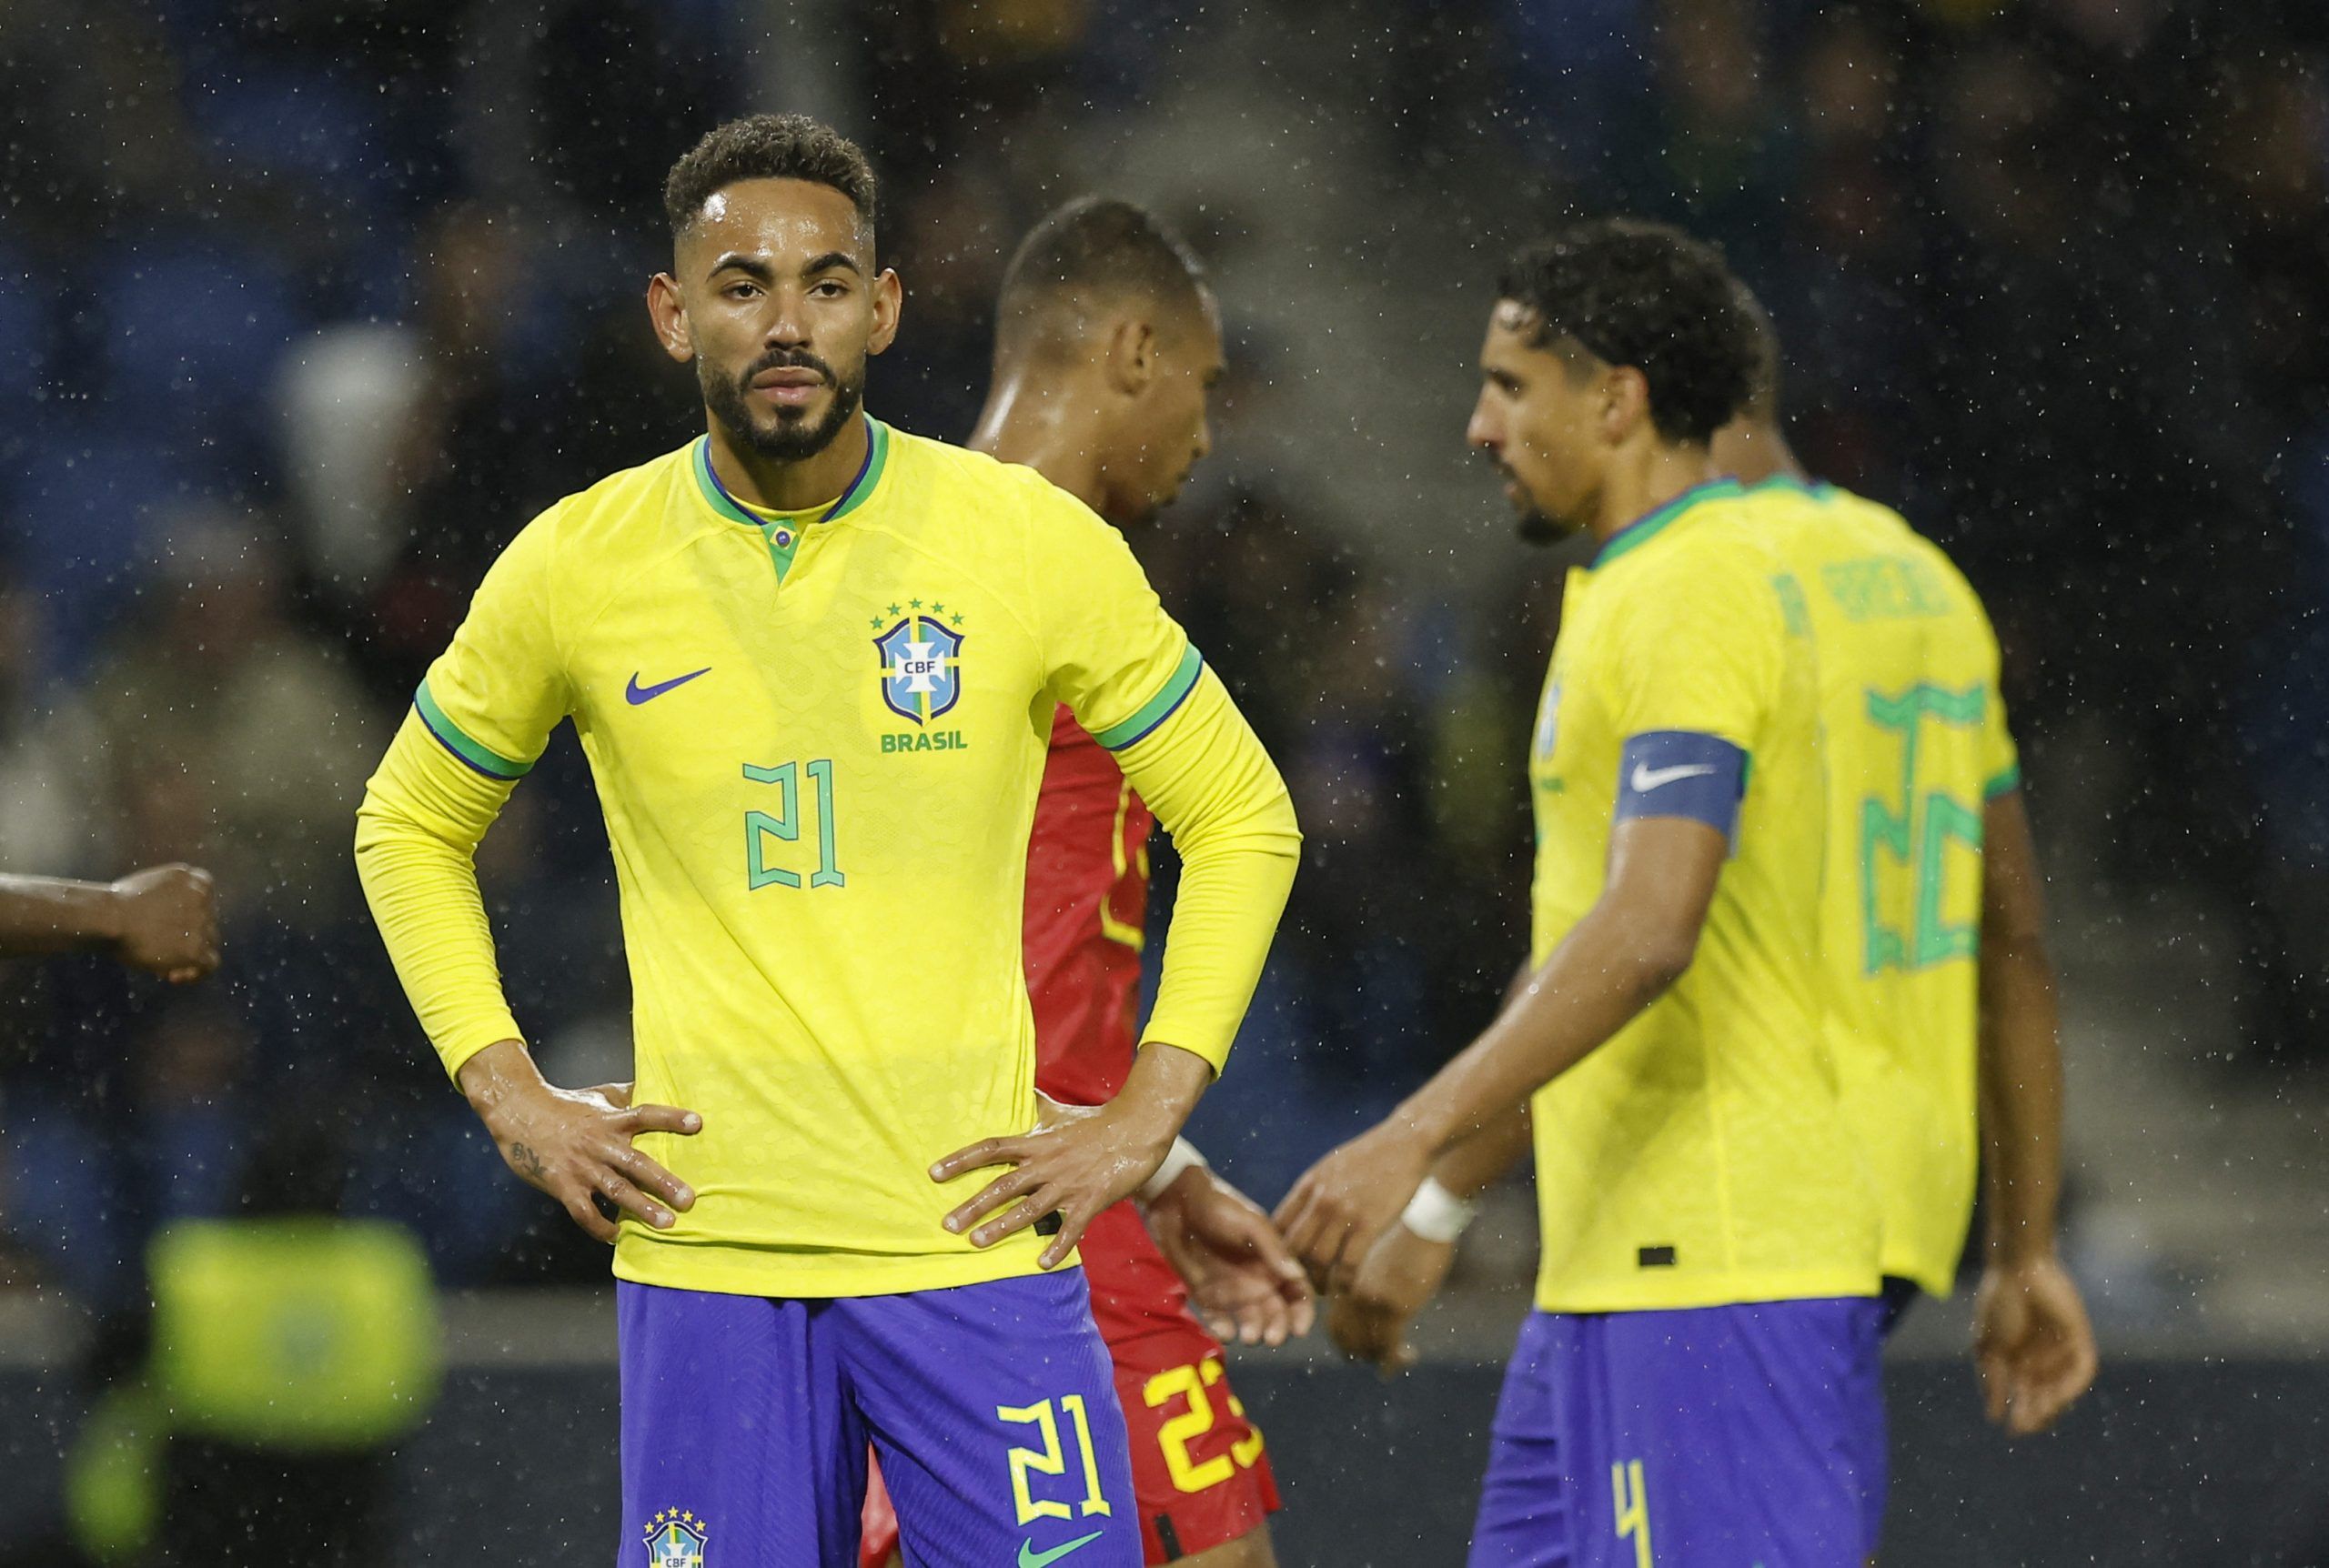 Soccer Football - International Friendly - Brazil v Ghana - Stade Oceane, Le Havre, France - September 23, 2022  Brazil's Matheus Cunha reacts REUTERS/Benoit Tessier